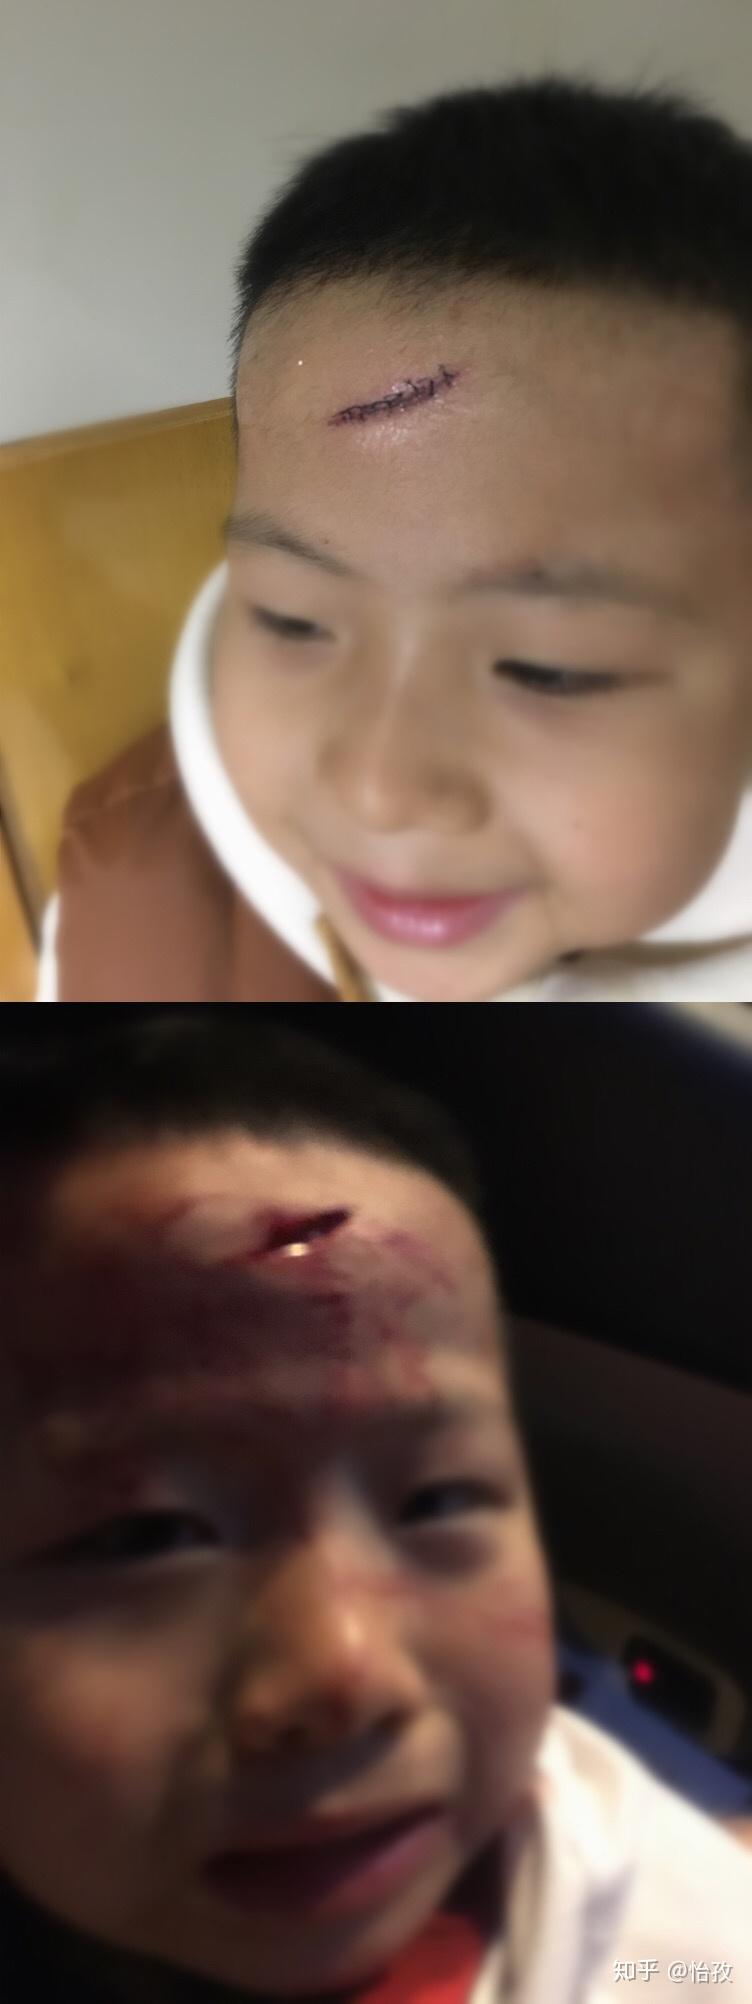 小孩打架受伤图片